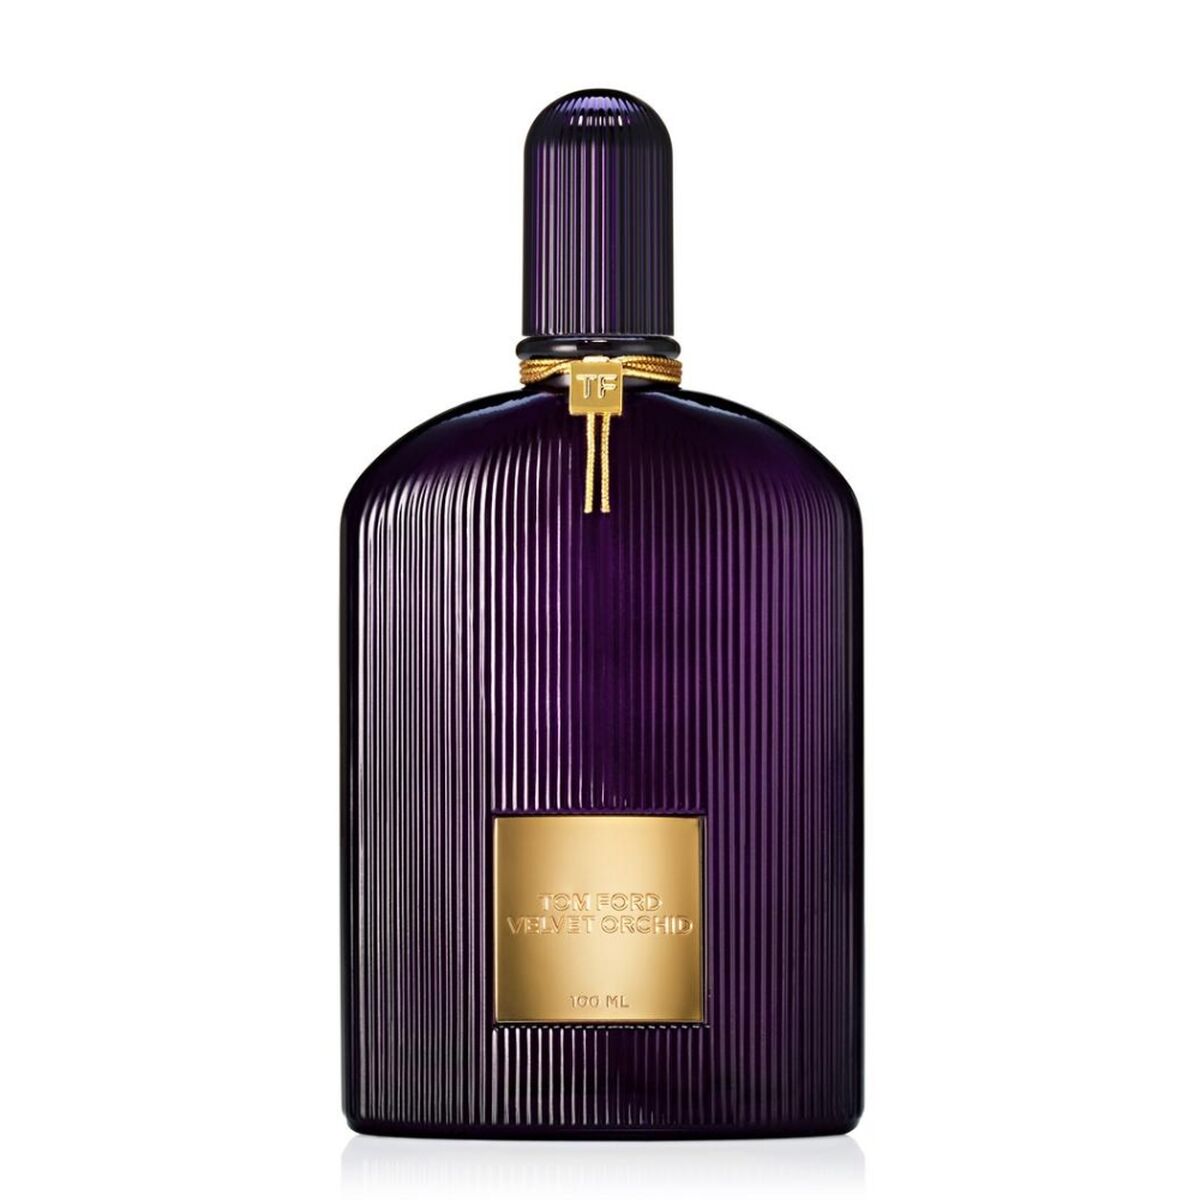 Tom Ford Women's Perfume EDP Velvet Orchid 100 ml